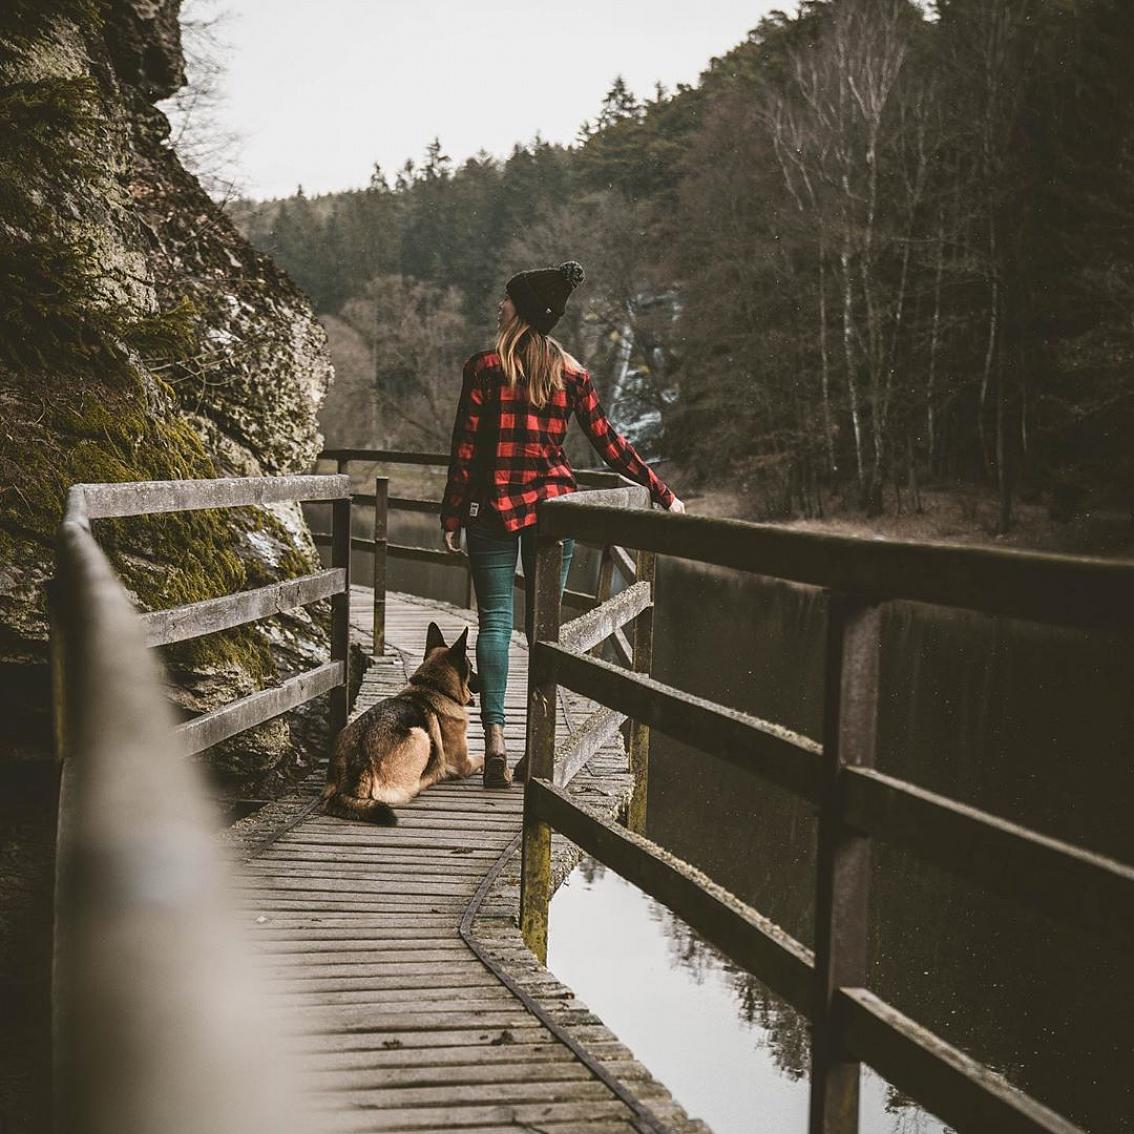 Jižní Čechy on Instagram: “Perfektní romantická procházka v okolí řeky Lužnice a Židovy Strouhy. Kaňon a skalní útvary jsou naprosto magické a atmosféra je…”